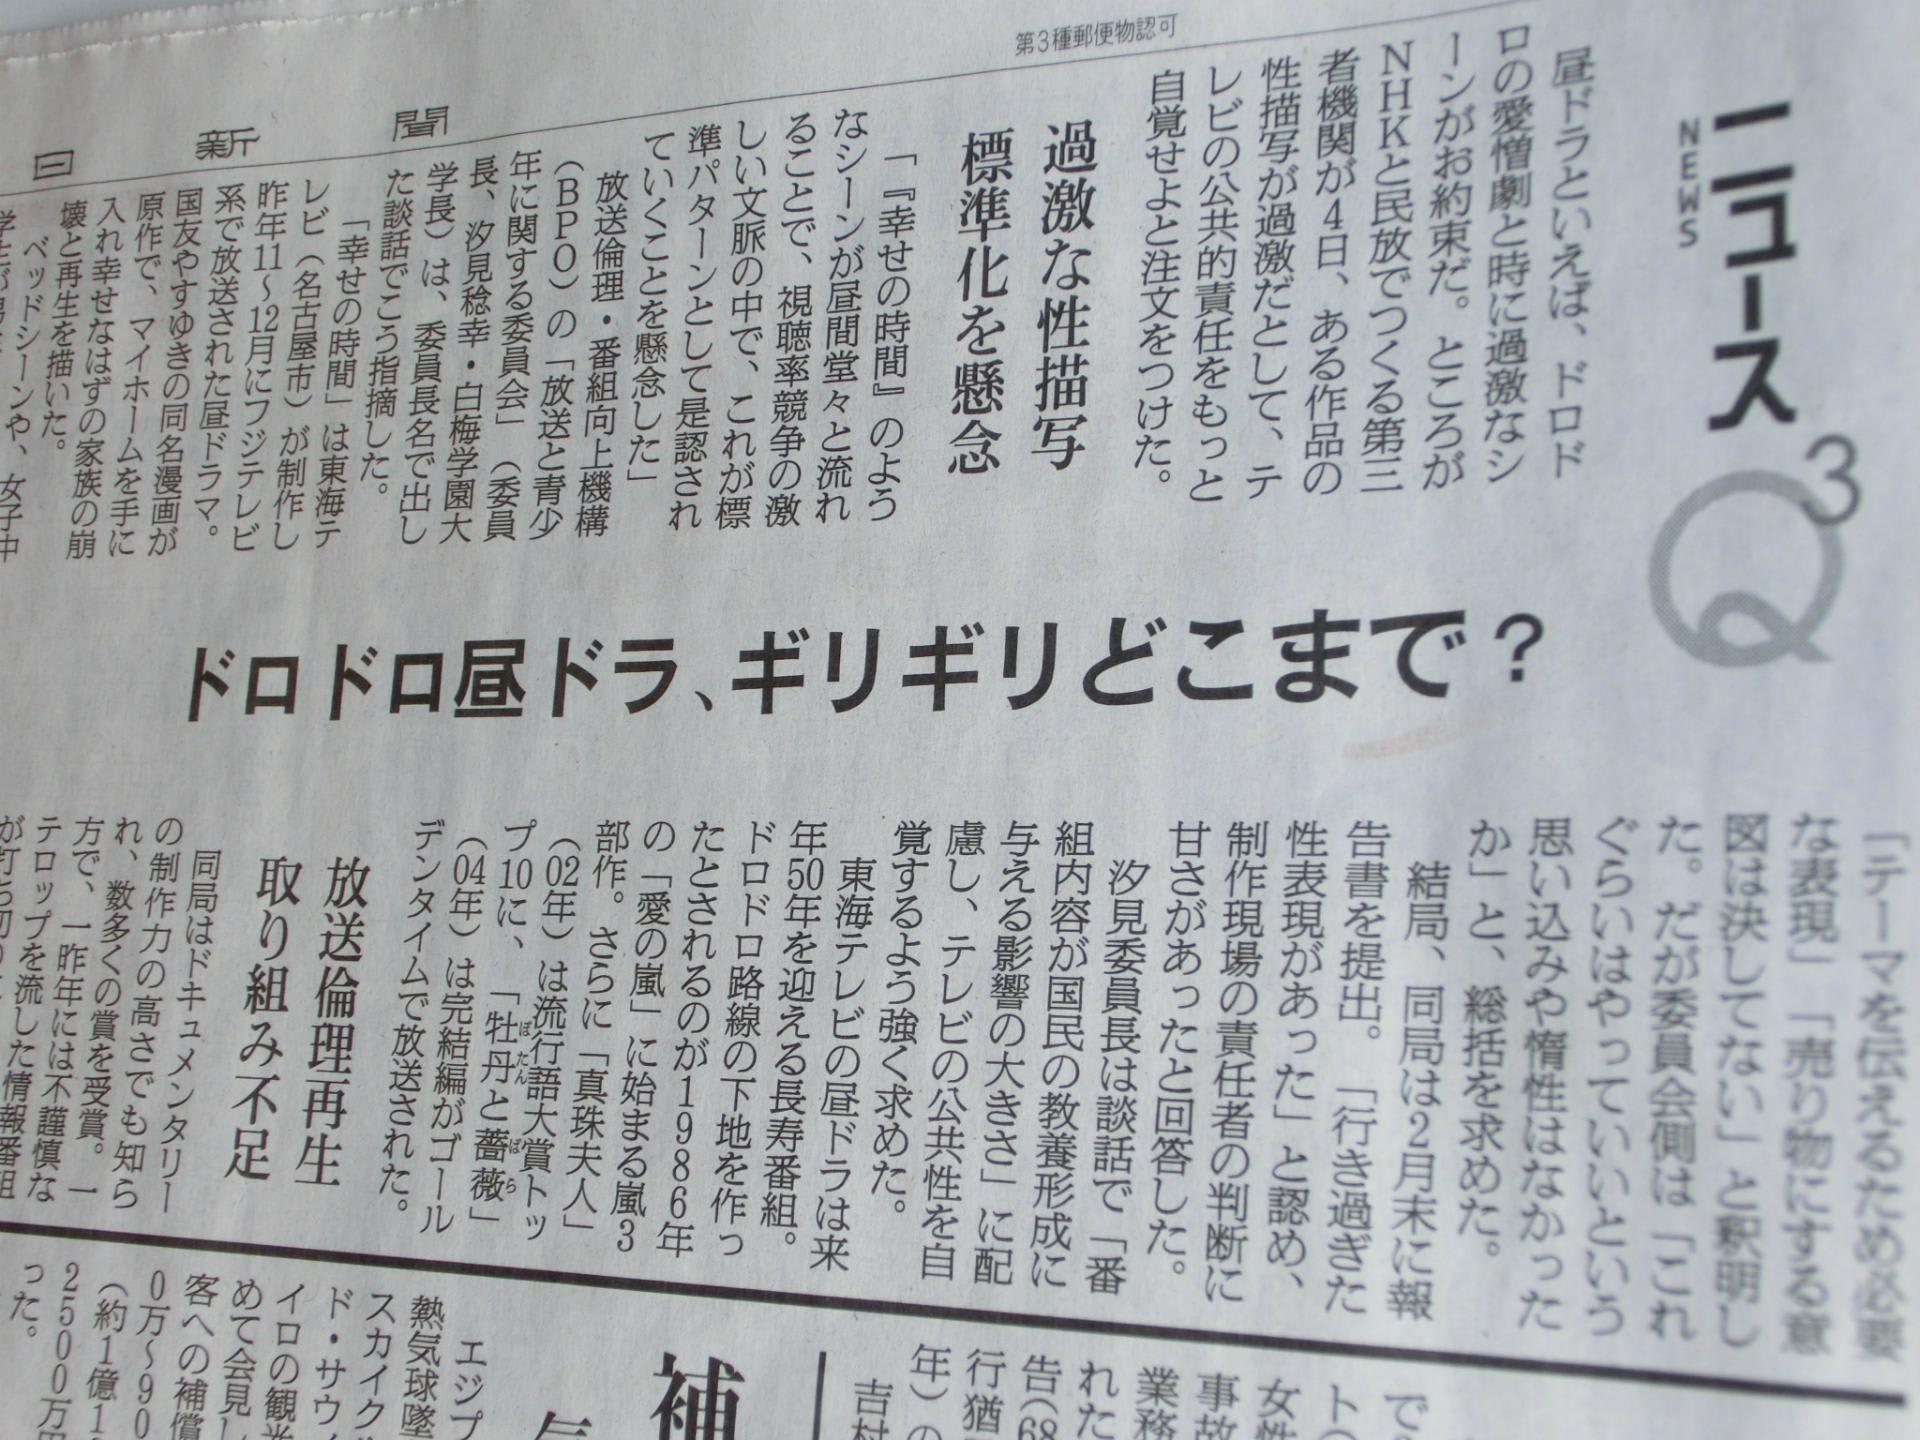 昼ドラ 幸せの時間 問題について 朝日新聞でコメント 碓井広義ブログ